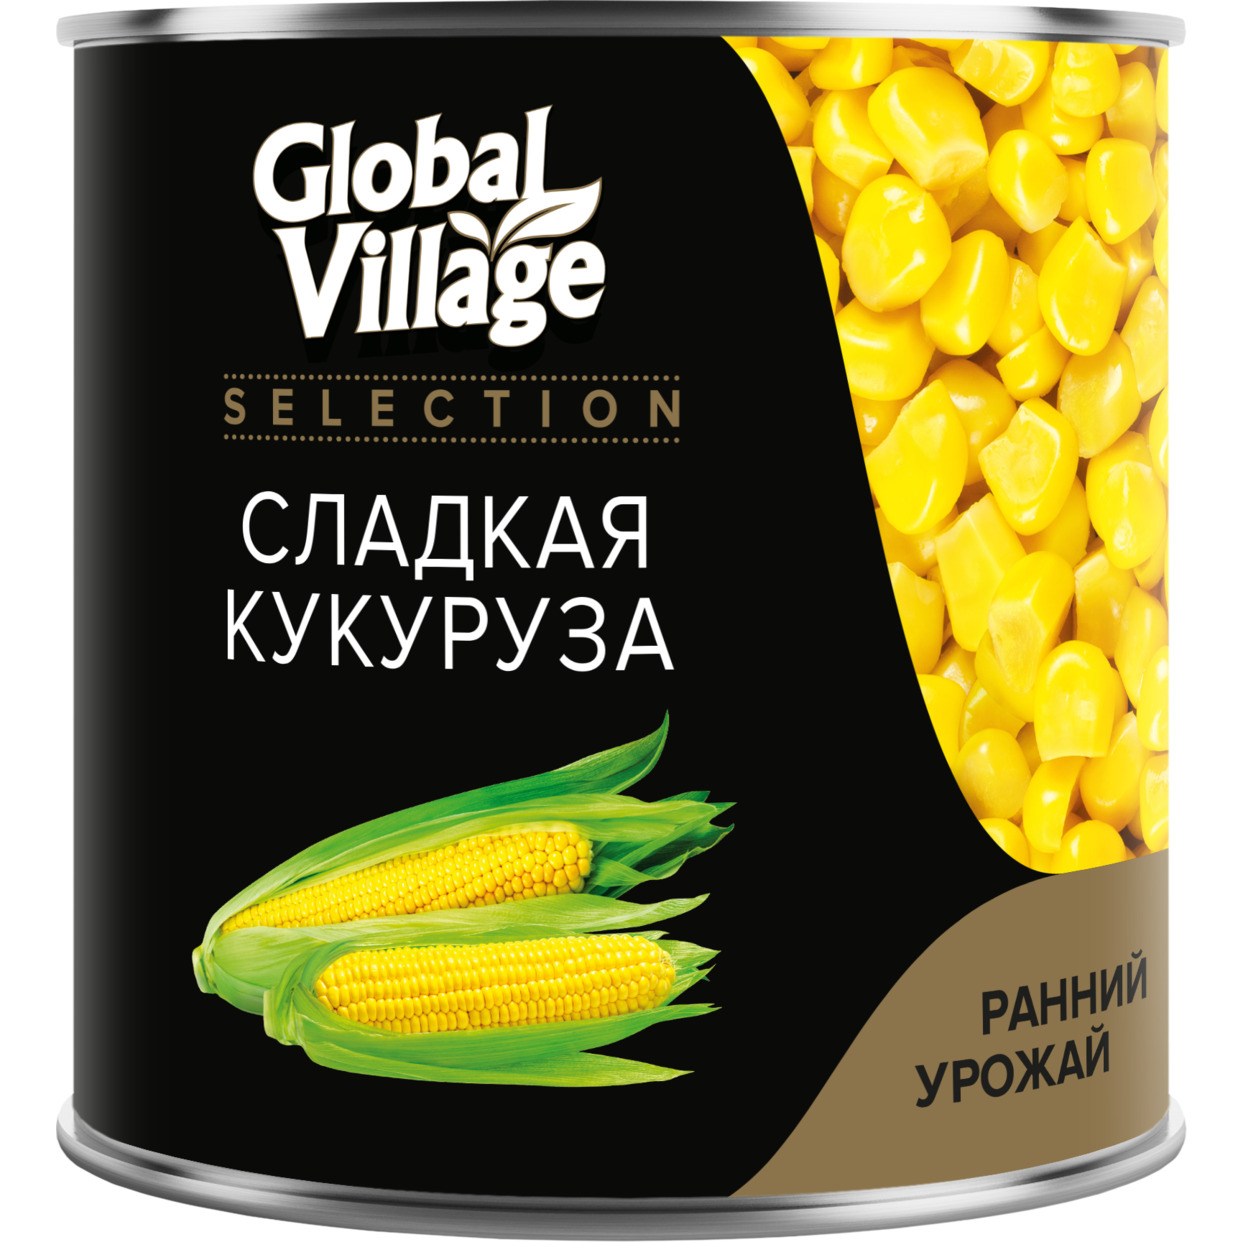 Консервы овощные стерилизованные: Кукуруза сладкая, ж/б 340 г по акции в Пятерочке